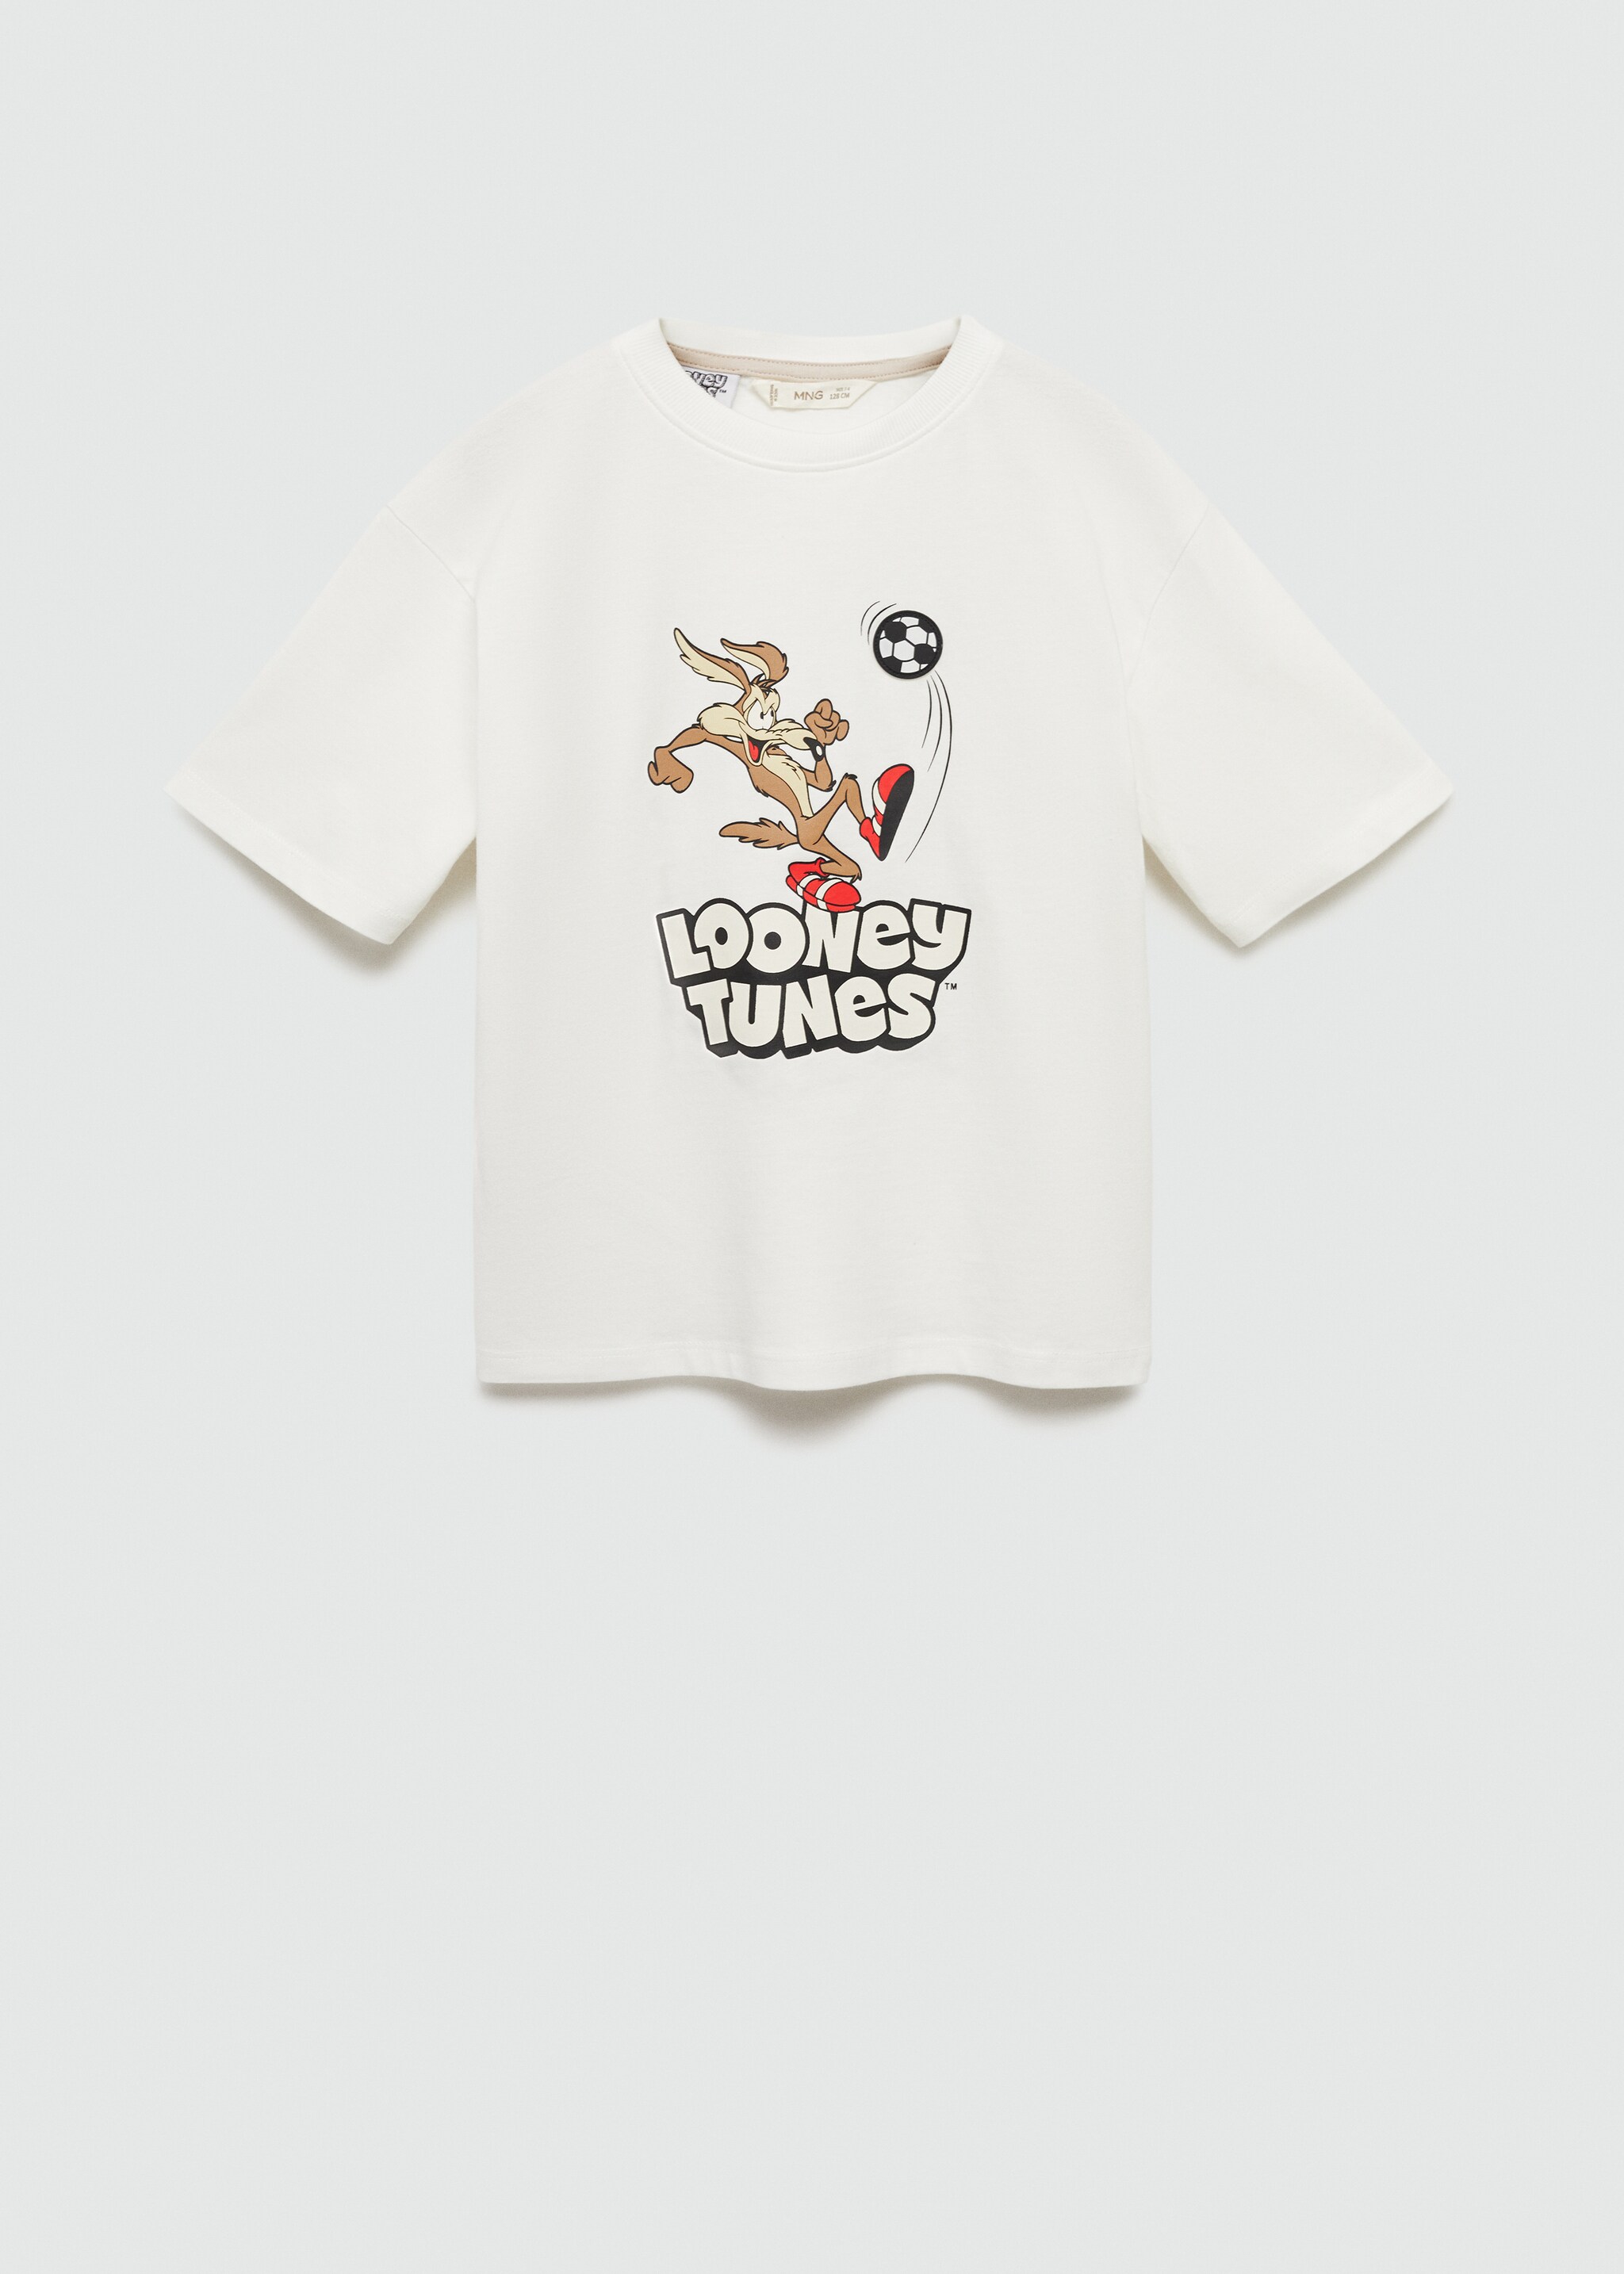 Camiseta Looney Tunes - Artículo sin modelo